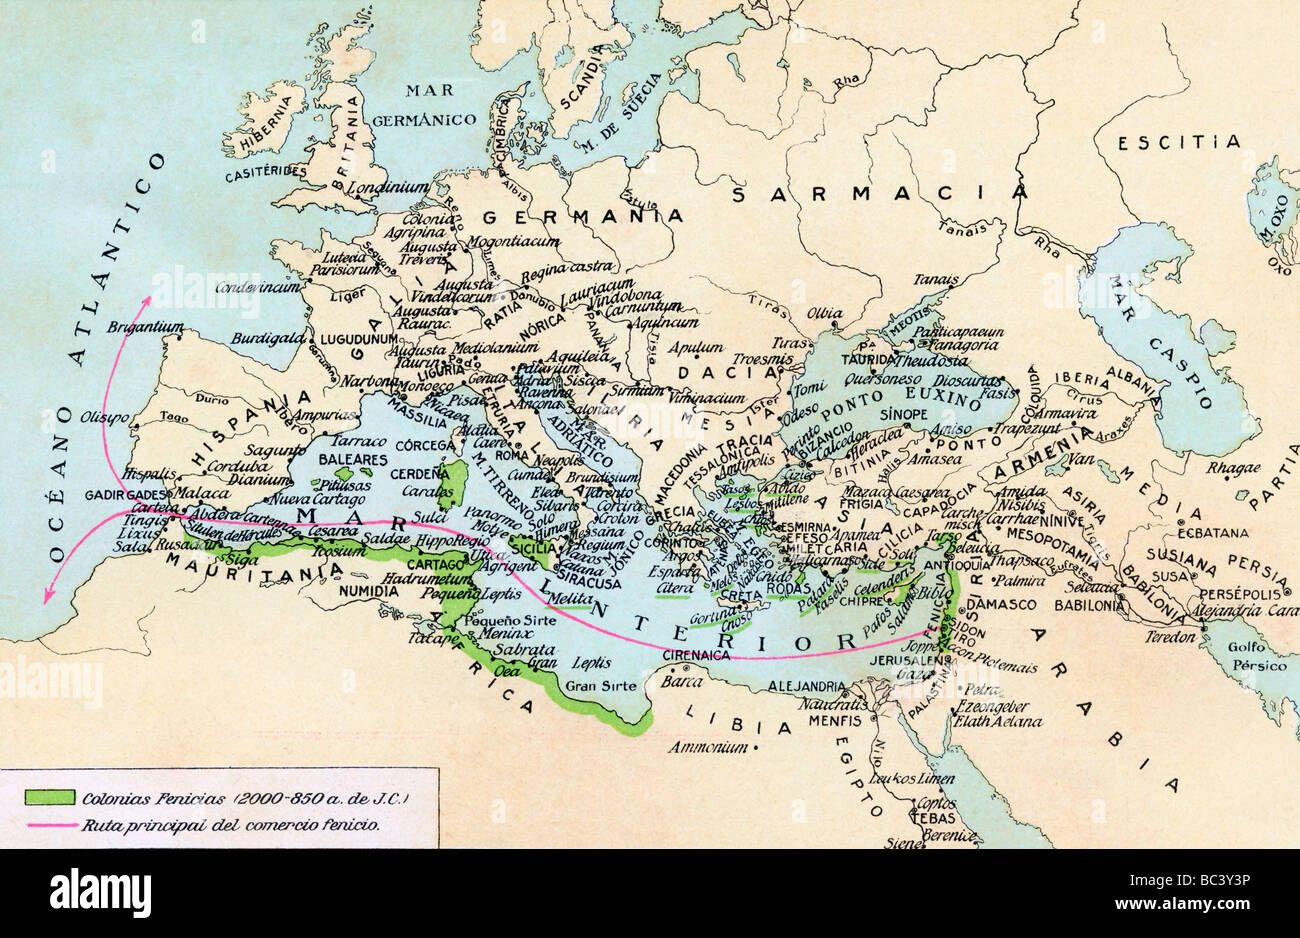 Phönizische Kolonien und Einflussgebiet im Mittelmeer, 200 bis 850 v. Chr. siehe Schlüssel in Beschreibung unten. Stockfoto